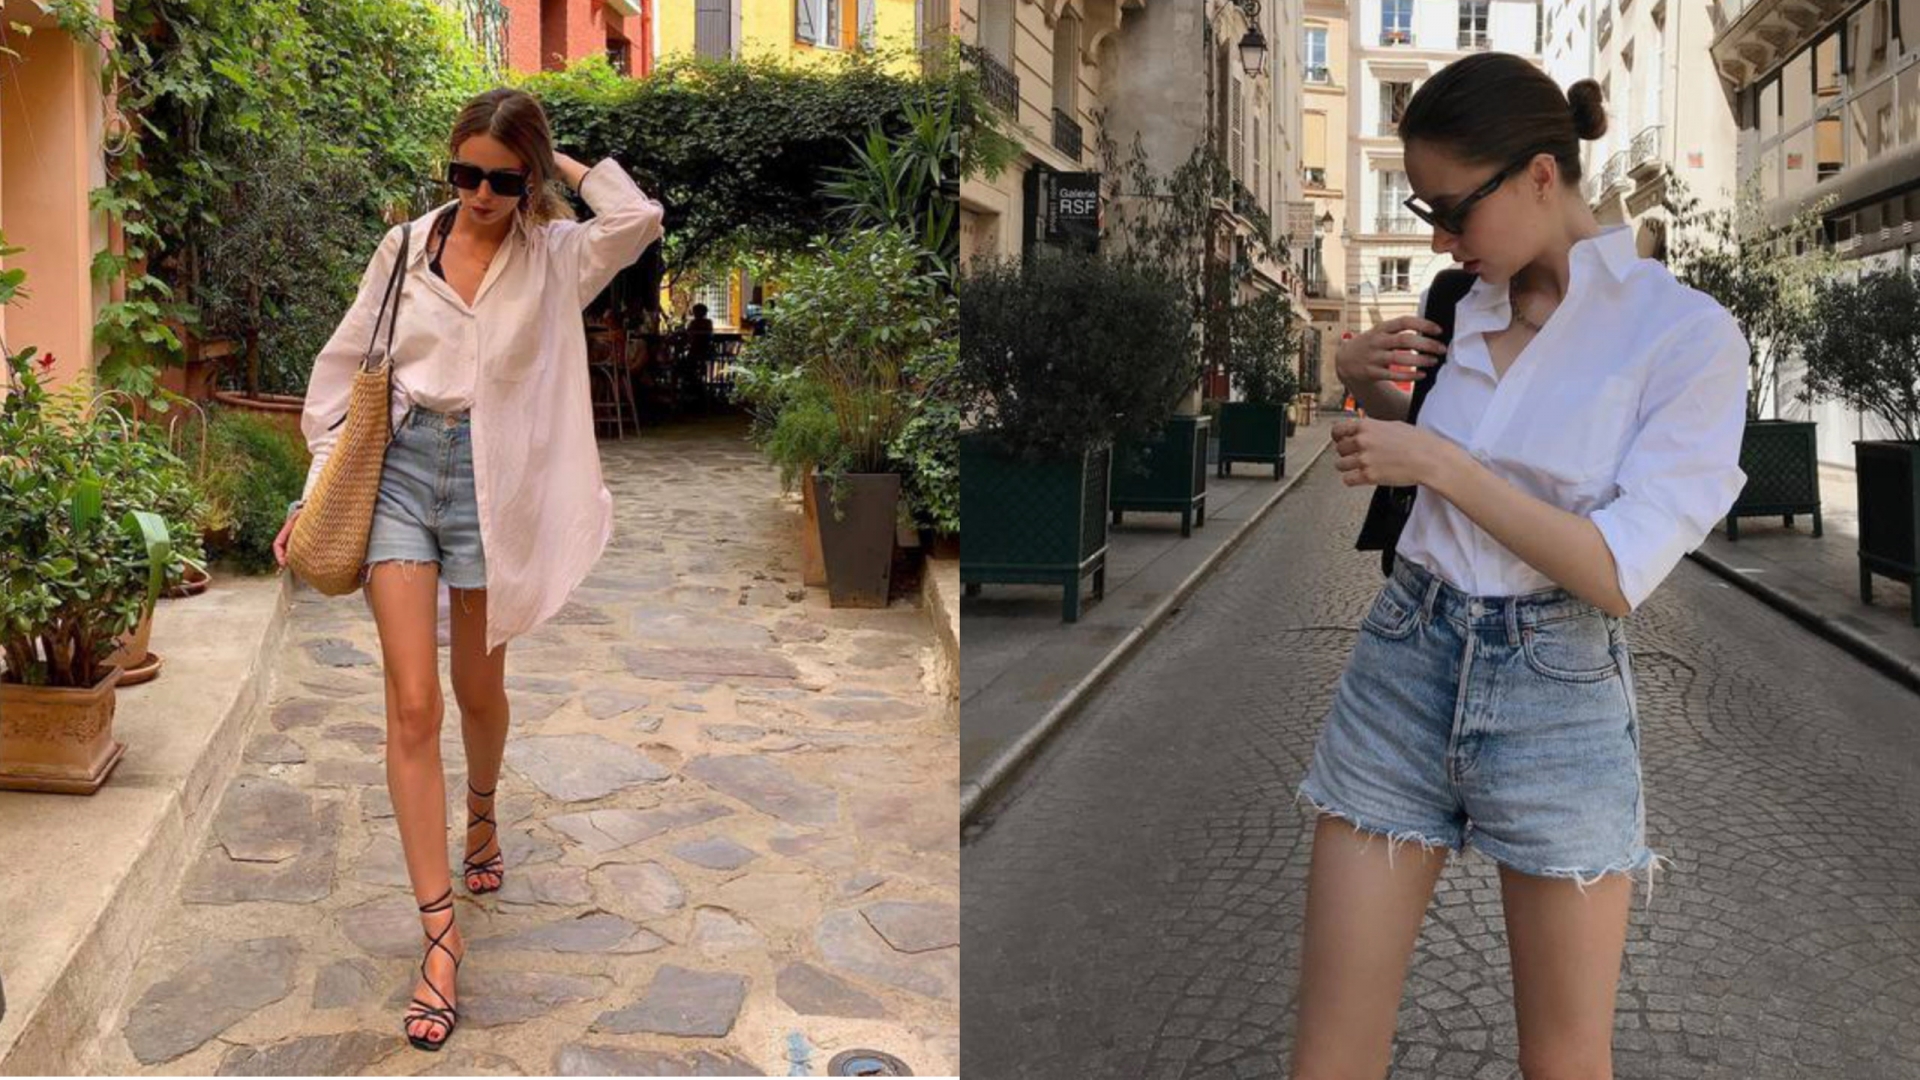 Quần short jeans và áo sơ mi là combo thời trang vừa cá tính lại vừa thanh lịch đến từ các cô nàng nước Pháp. Việc kết hợp cùng áo sơ mi khiến chiếc quần jeans bụi bặm trở nên thanh lịch hơn hẳn.